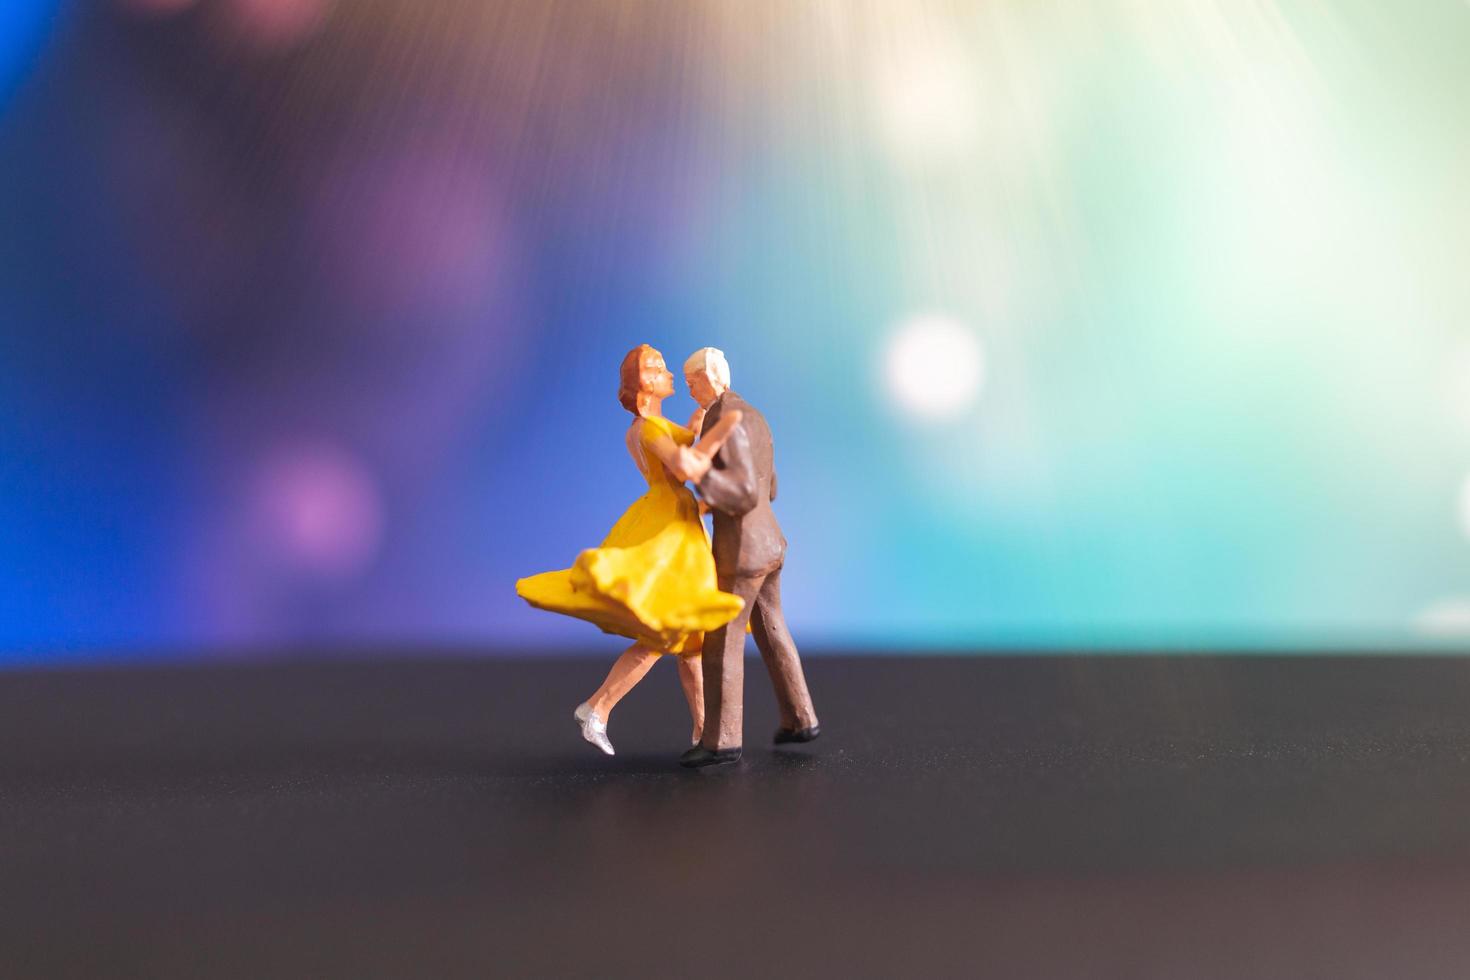 Miniaturpaar, das mit einem bunten Bokehhintergrund tanzt foto